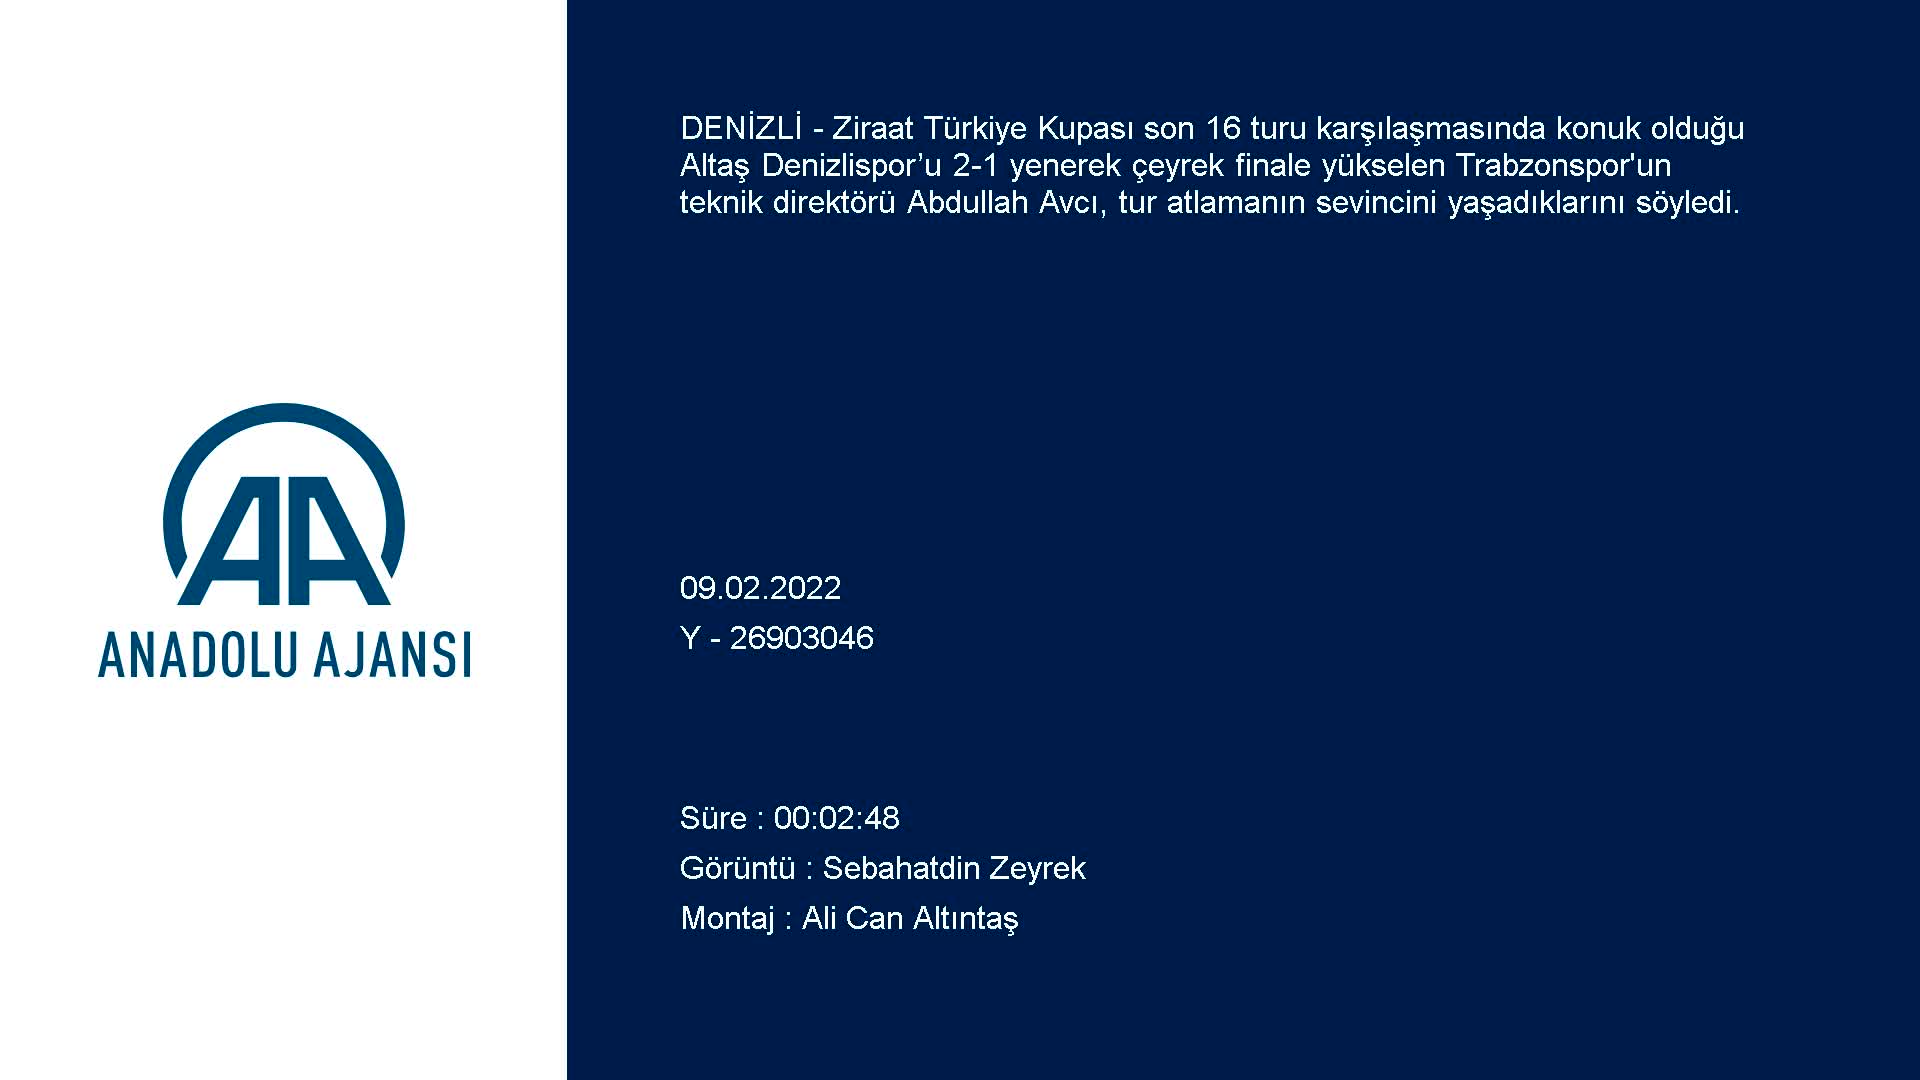 Denizlispor-Trabzonspor maçının ardından